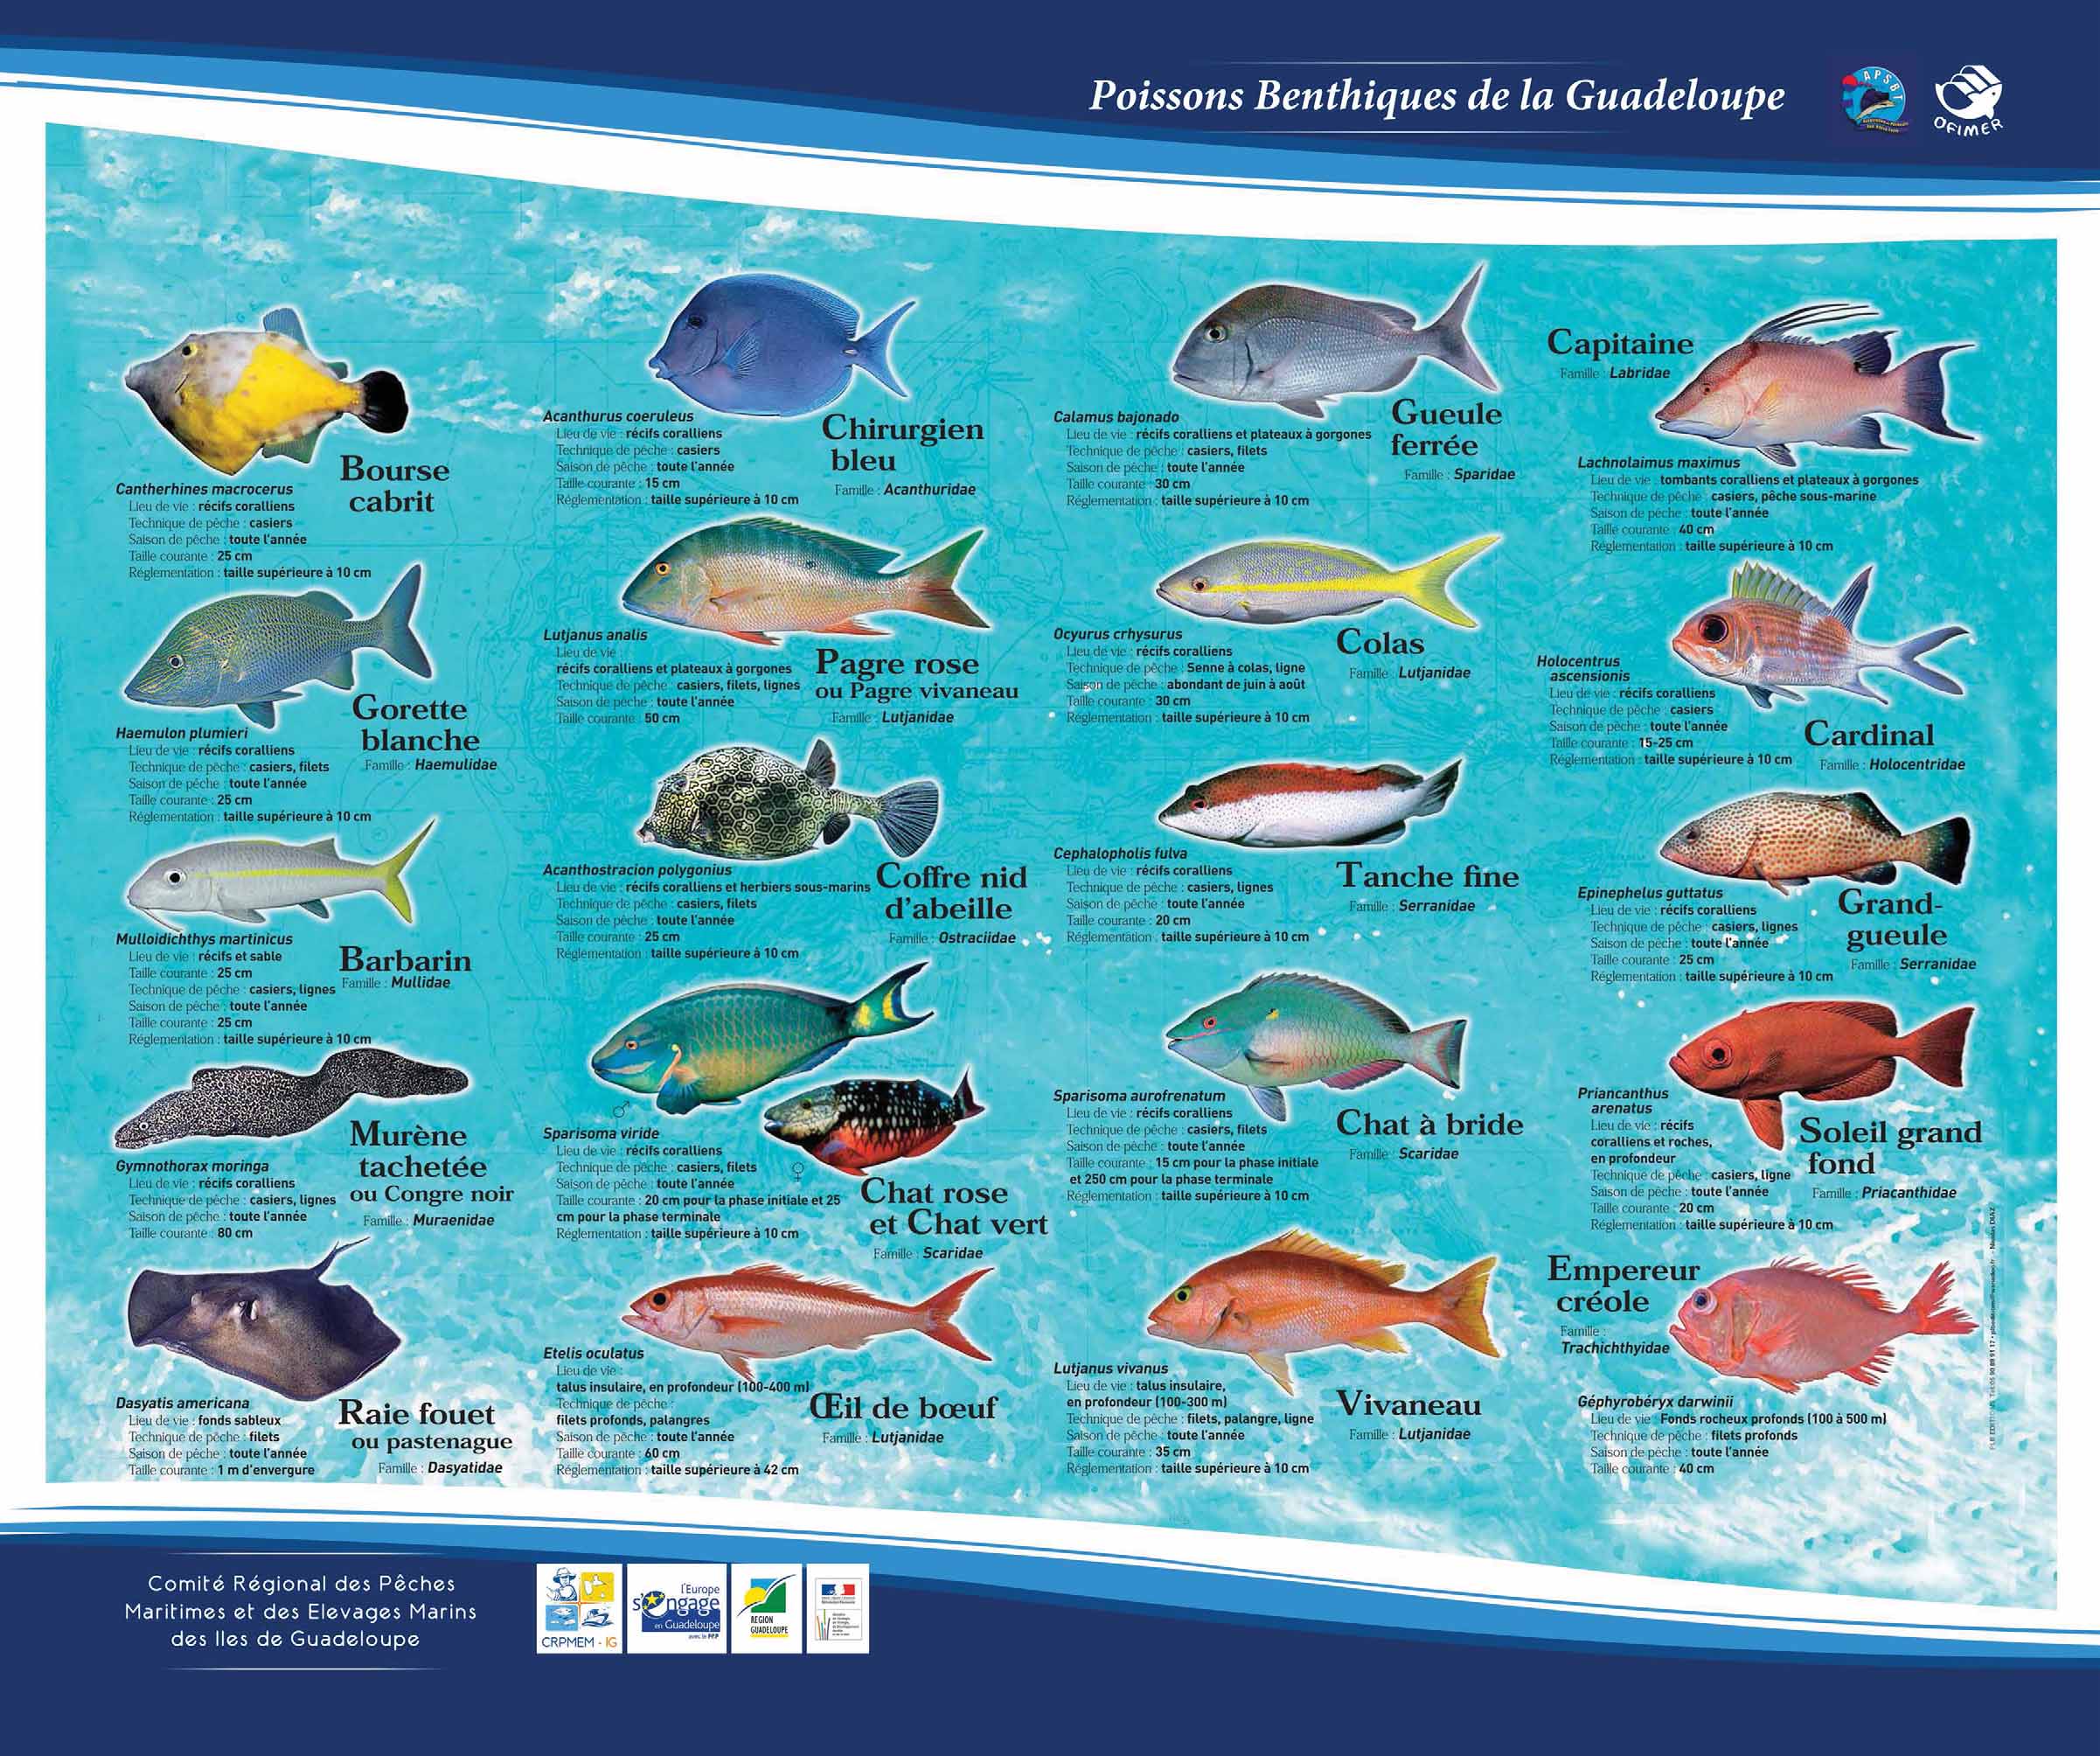 Télécharger le poster des poissons benthiques principaux consommés en Guadeloupe